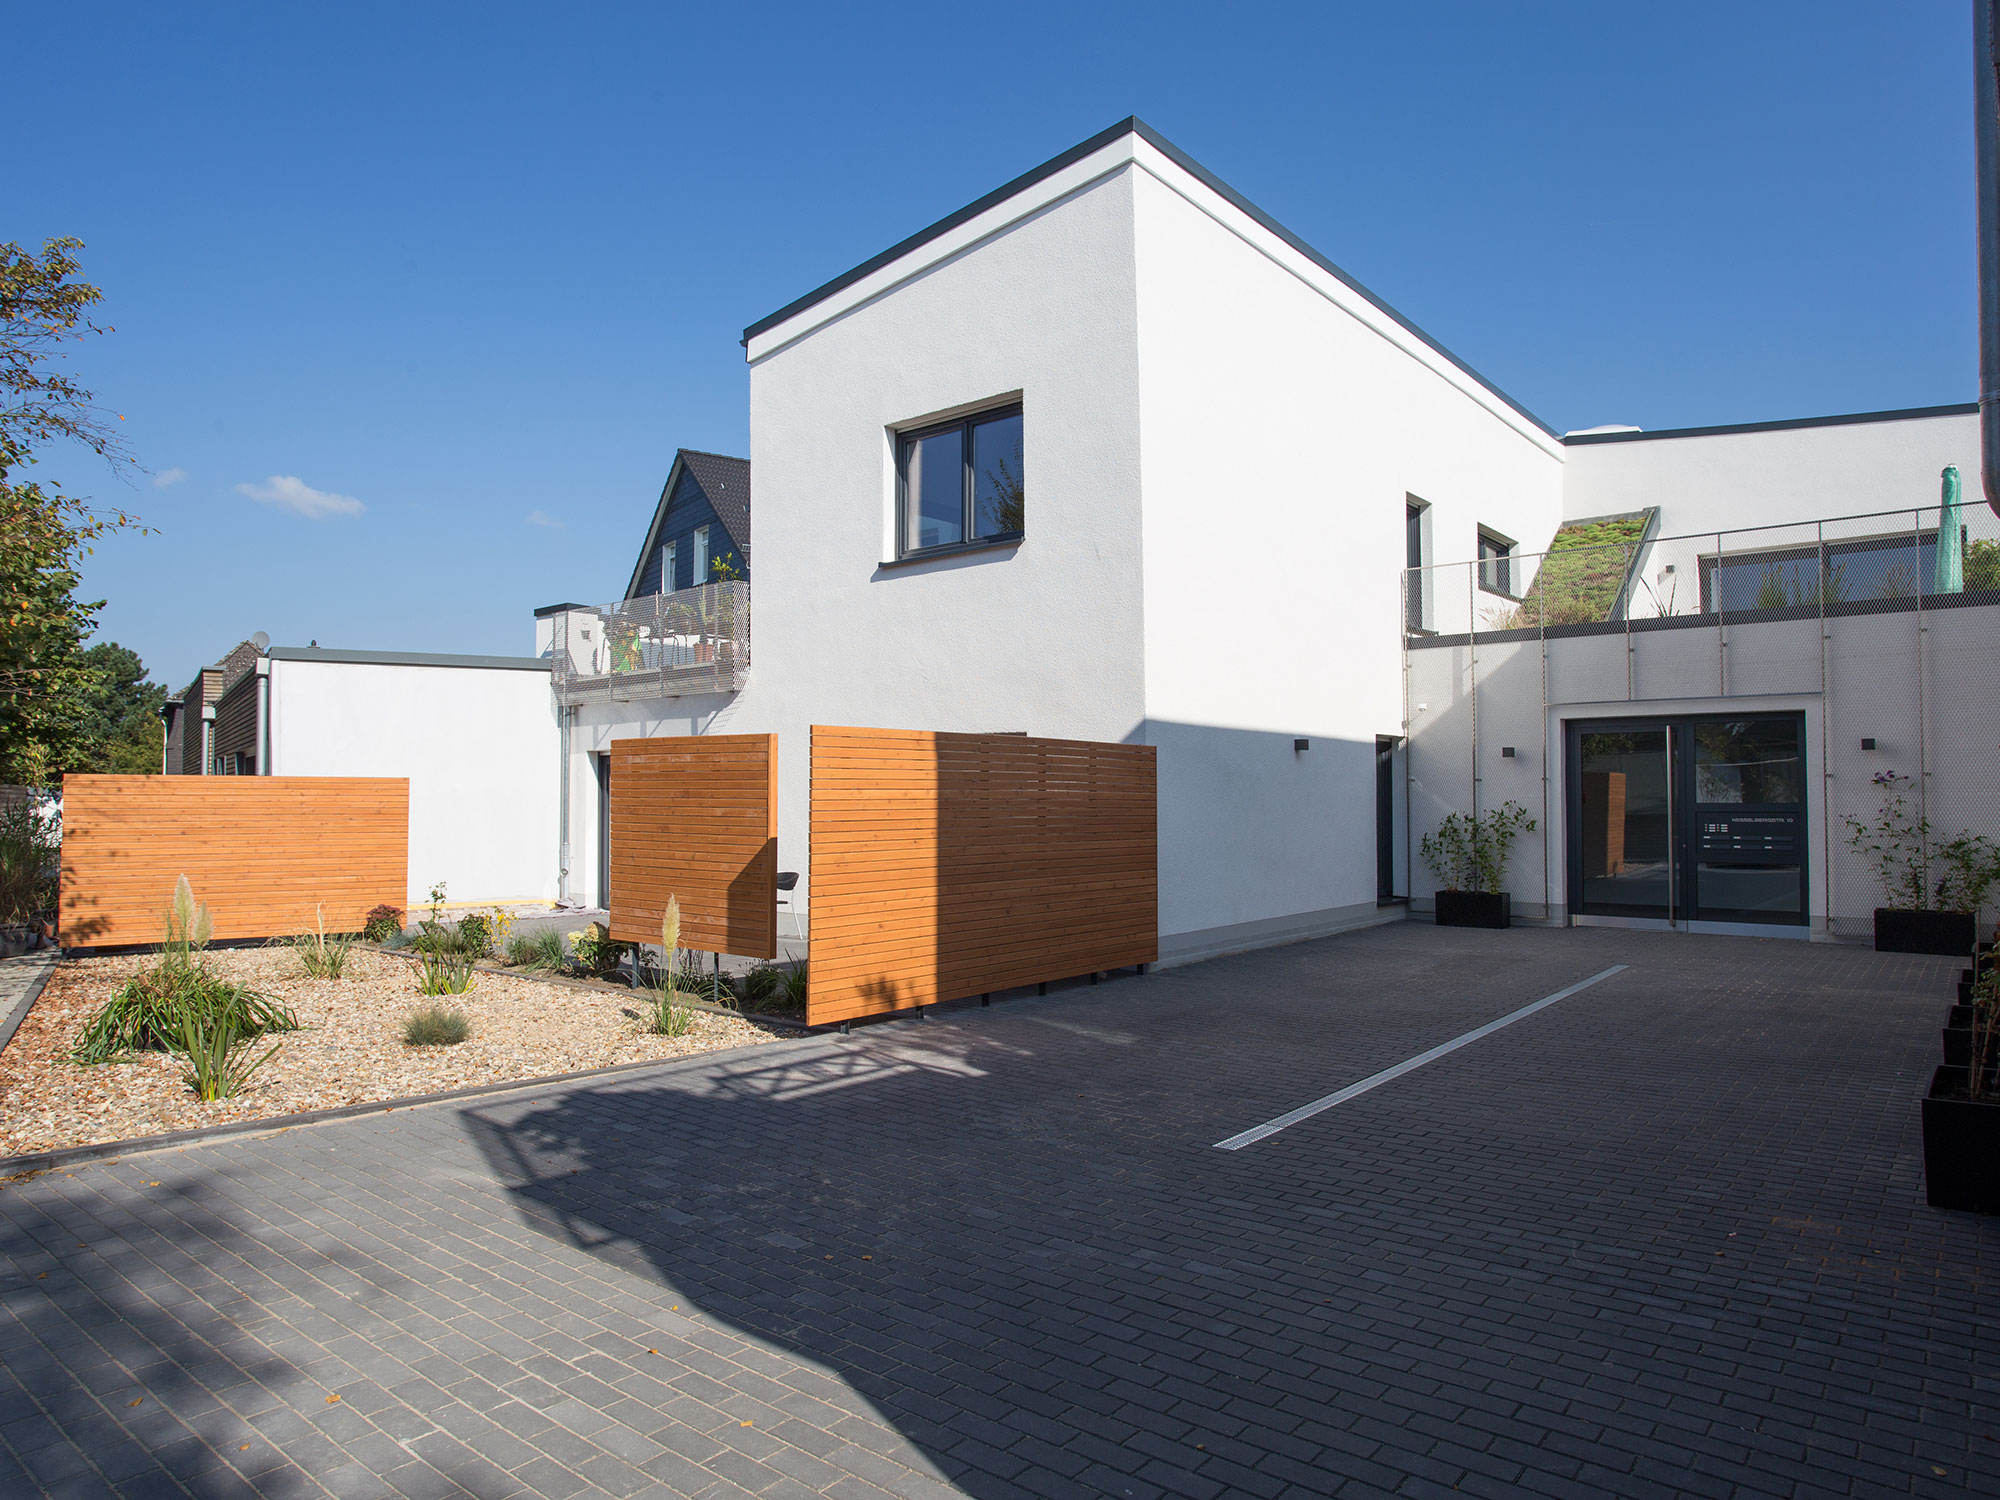 Anbau, Einfamilienhaus Haus L, Wuppertal - ah-architektur.de | Alisic-Haverkamp – Wir verfolgen das Ziel, funktionelle, kostenbewusste und ambitioniert gestaltete Architektur zu schaffen, die einen ah-Effekt auslöst.